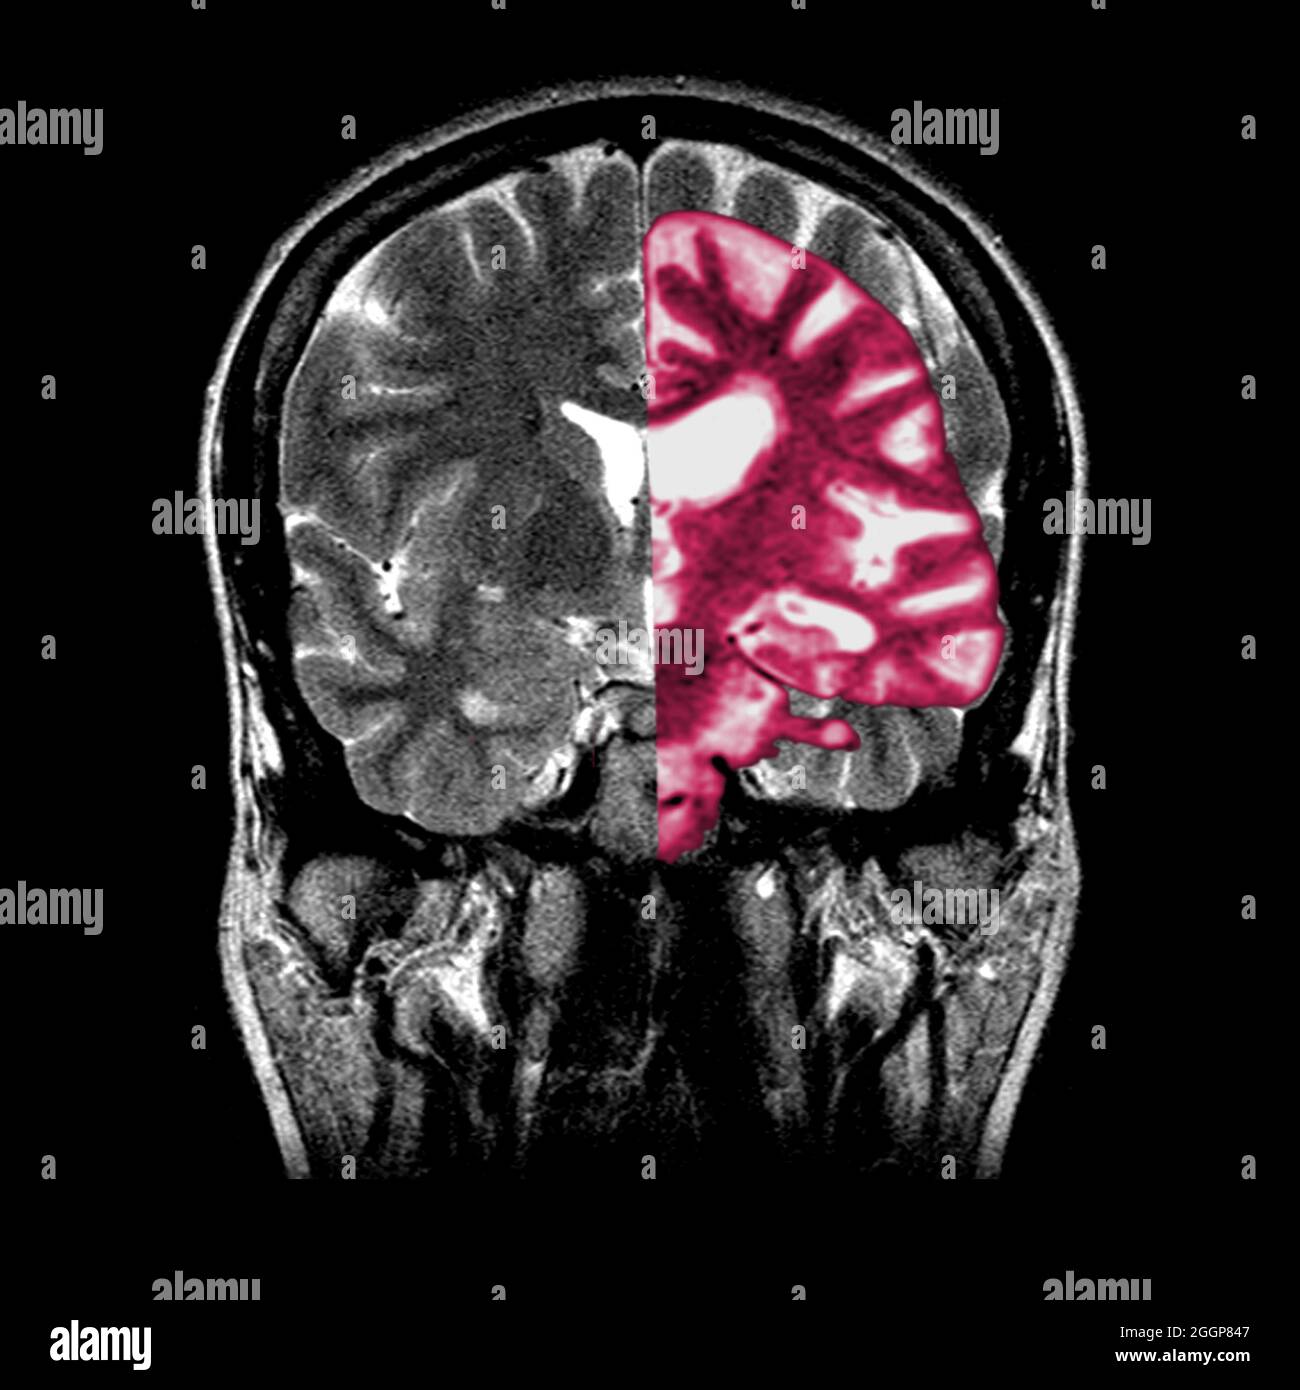 Ein zusammengesetztes Bild, das ein normales koronales (frontales) Querschnitt-MRT-Bild des Gehirns (in Graustufen) mit einem überlagerten koronalen MRT-Bild eines Gehirns mit fortgeschrittener Alzheimer-Erkrankung (in Pink) zeigt. Das erkrankte Gehirn zeigt eine schwere generalisierte Atrophie (Schrumpfung) des Hirngewebes mit einem akzentuierten Gewebeverlust, der die Temporallappen umfasst. Stockfoto